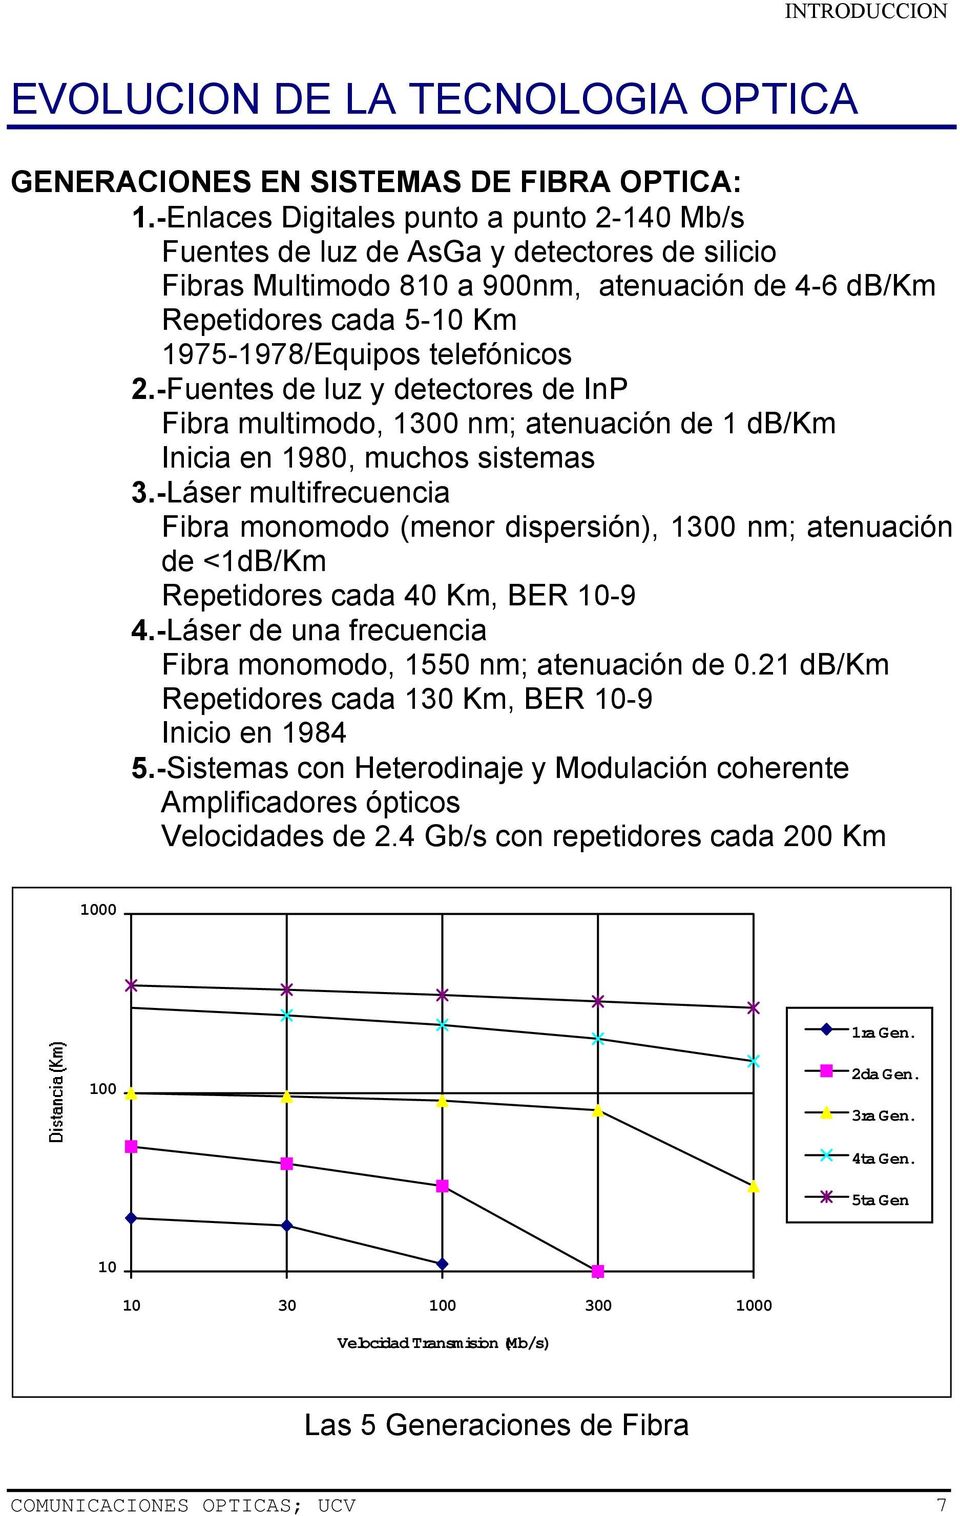 2.-Fuentes de luz y detectores de InP Fibra multimodo, 1300 nm; atenuación de 1 db/km Inicia en 1980, muchos sistemas 3.